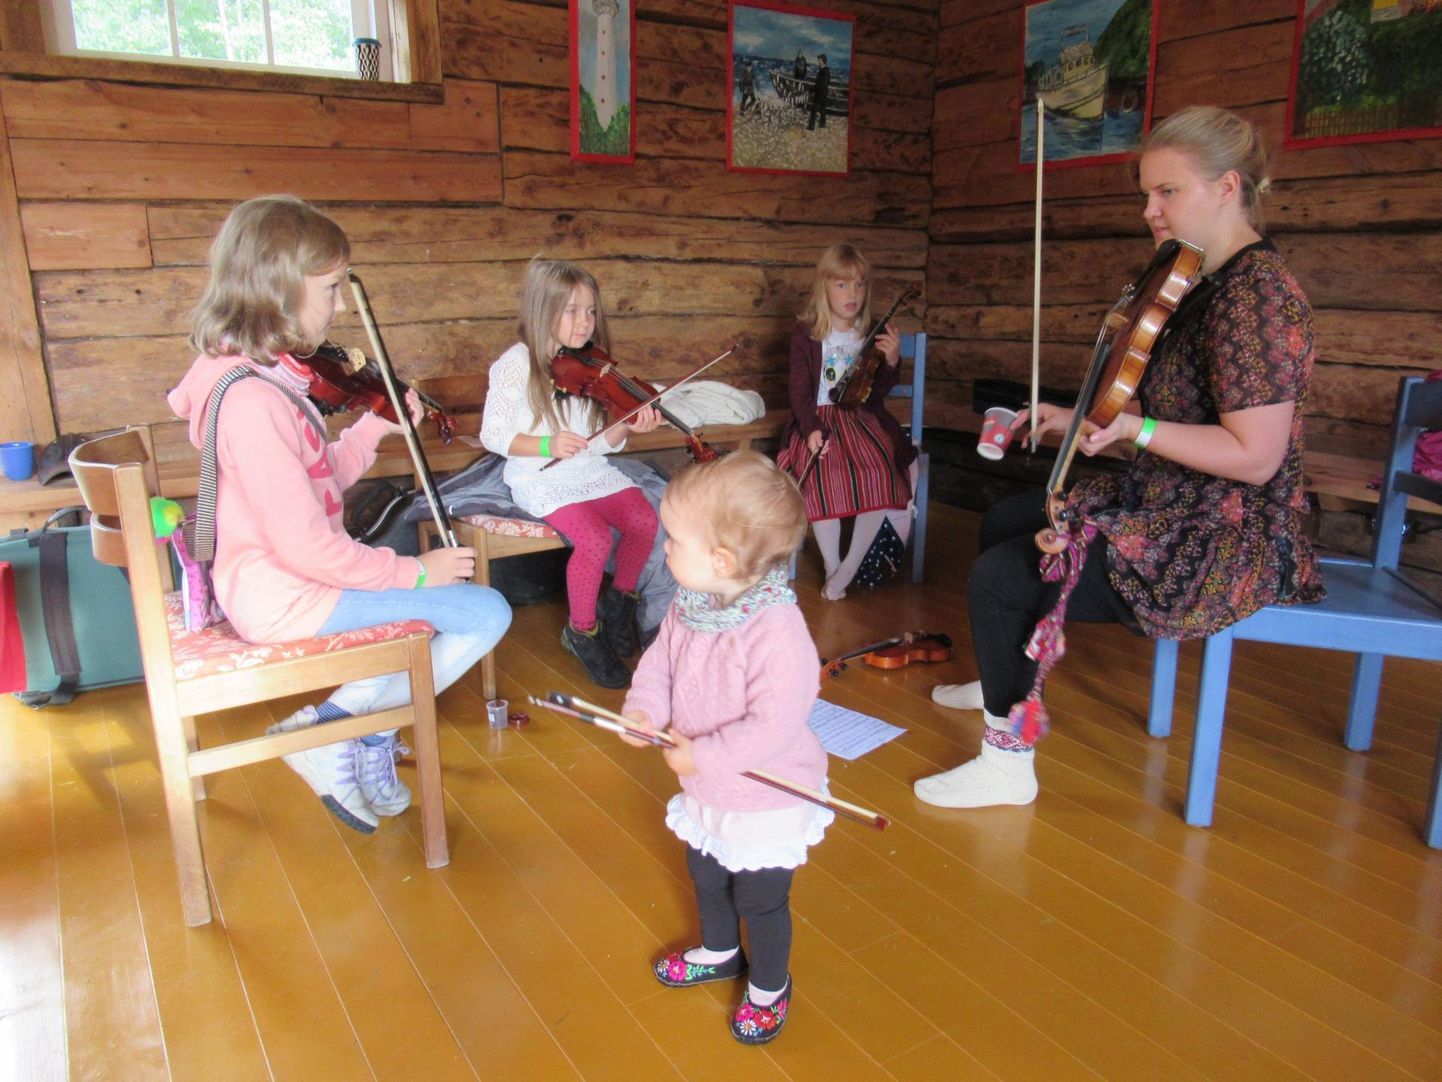 Virumaalt pärit Pauliine Sild alustas laupäeva hommikul Metsamaa pärimus­talus viiulitundi pisimatega, esiplaanil õpetaja ­enda tütar, viiulipoogen käes.